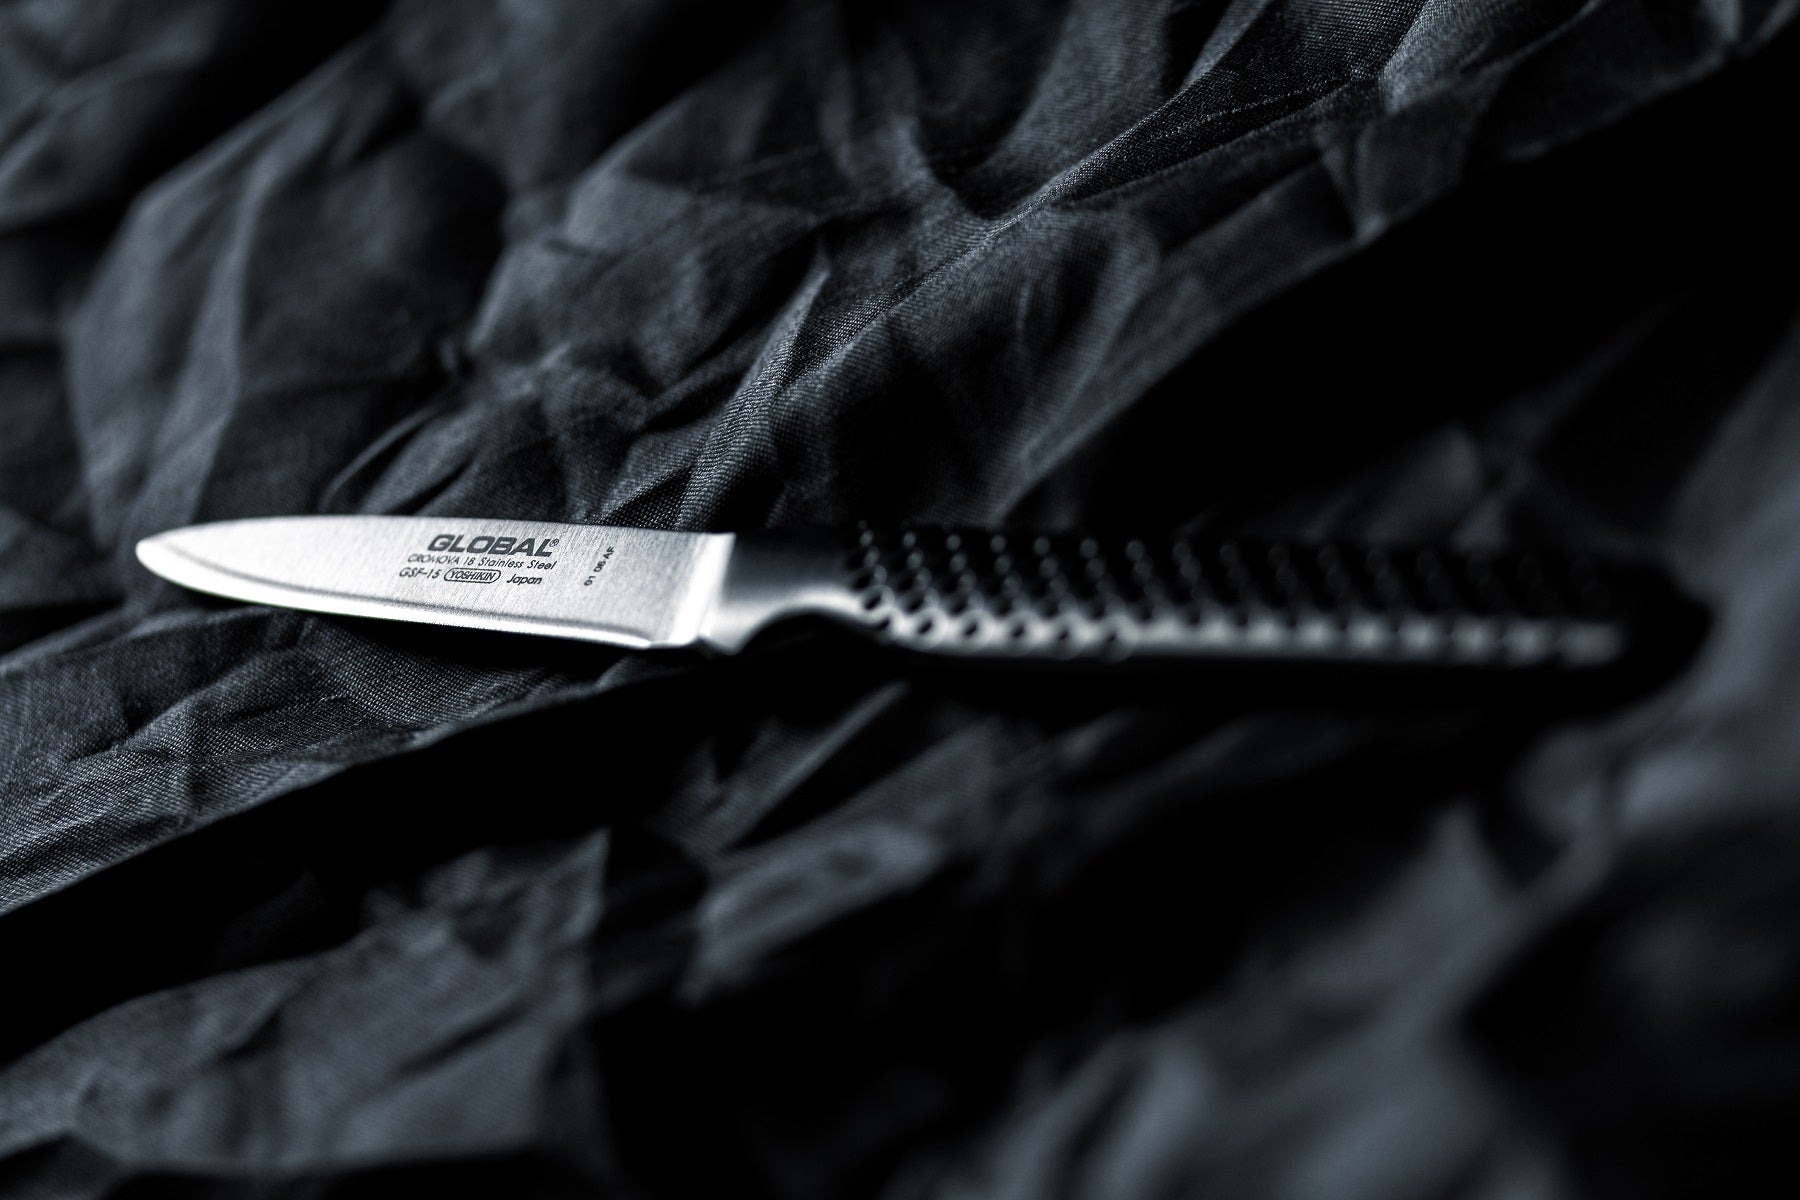 Global GSF-15 8cm Blade Peeling Knife